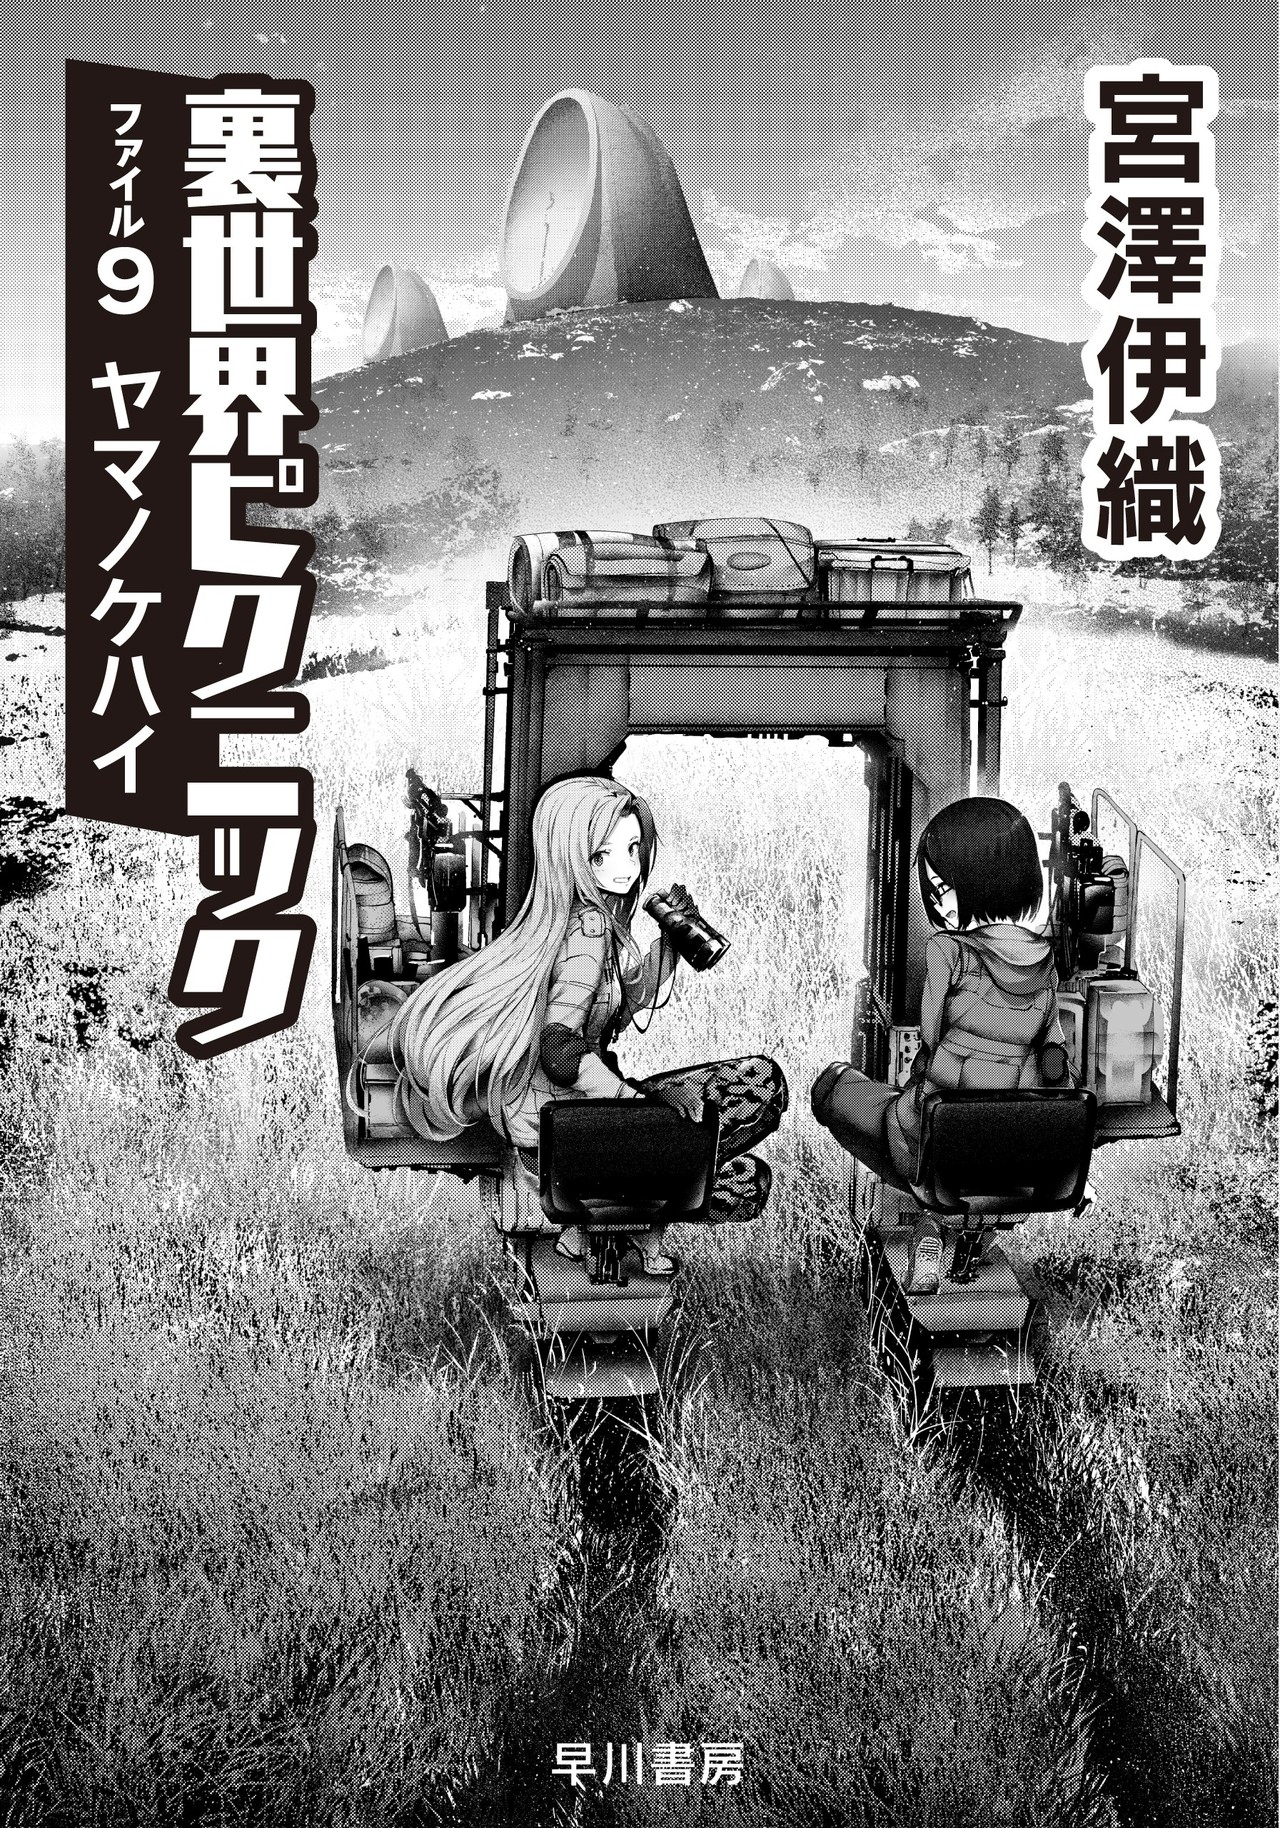 Otherside Picnic vol. 5 by Iori Miyazawa / NEW Yuri manga from